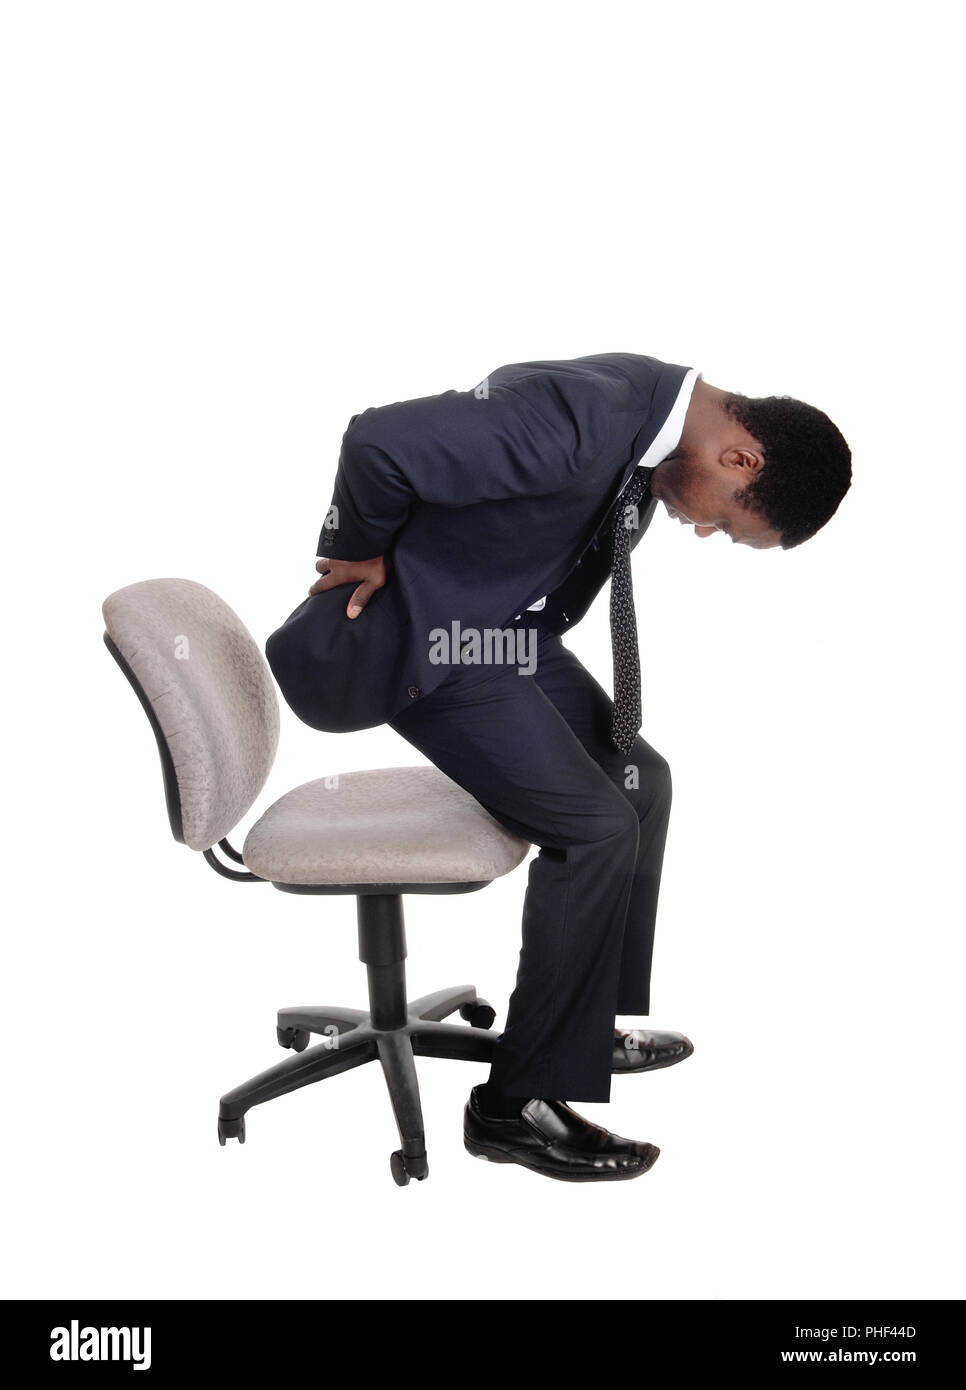 Menschen mit Rückenschmerzen Aufstehen vom Stuhl Stockfotografie - Alamy